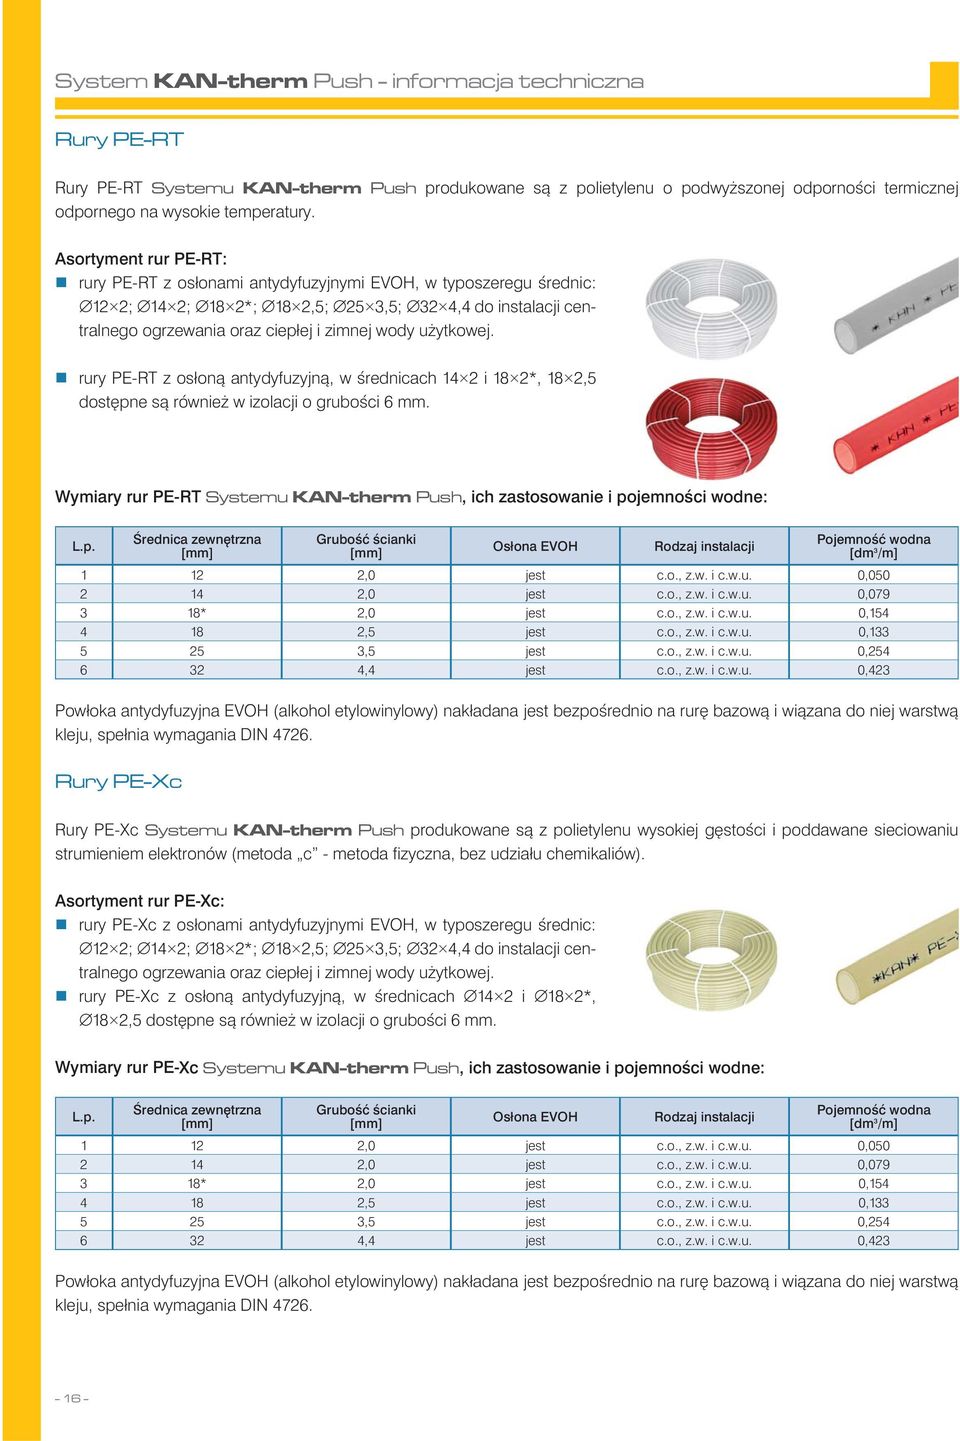 wody użytkowej. rury PE-RT z osłoną antydyfuzyjną, w średnicach 14 2 i 18 2*, 18 2,5 dostępne są również w izolacji o grubości 6 mm.